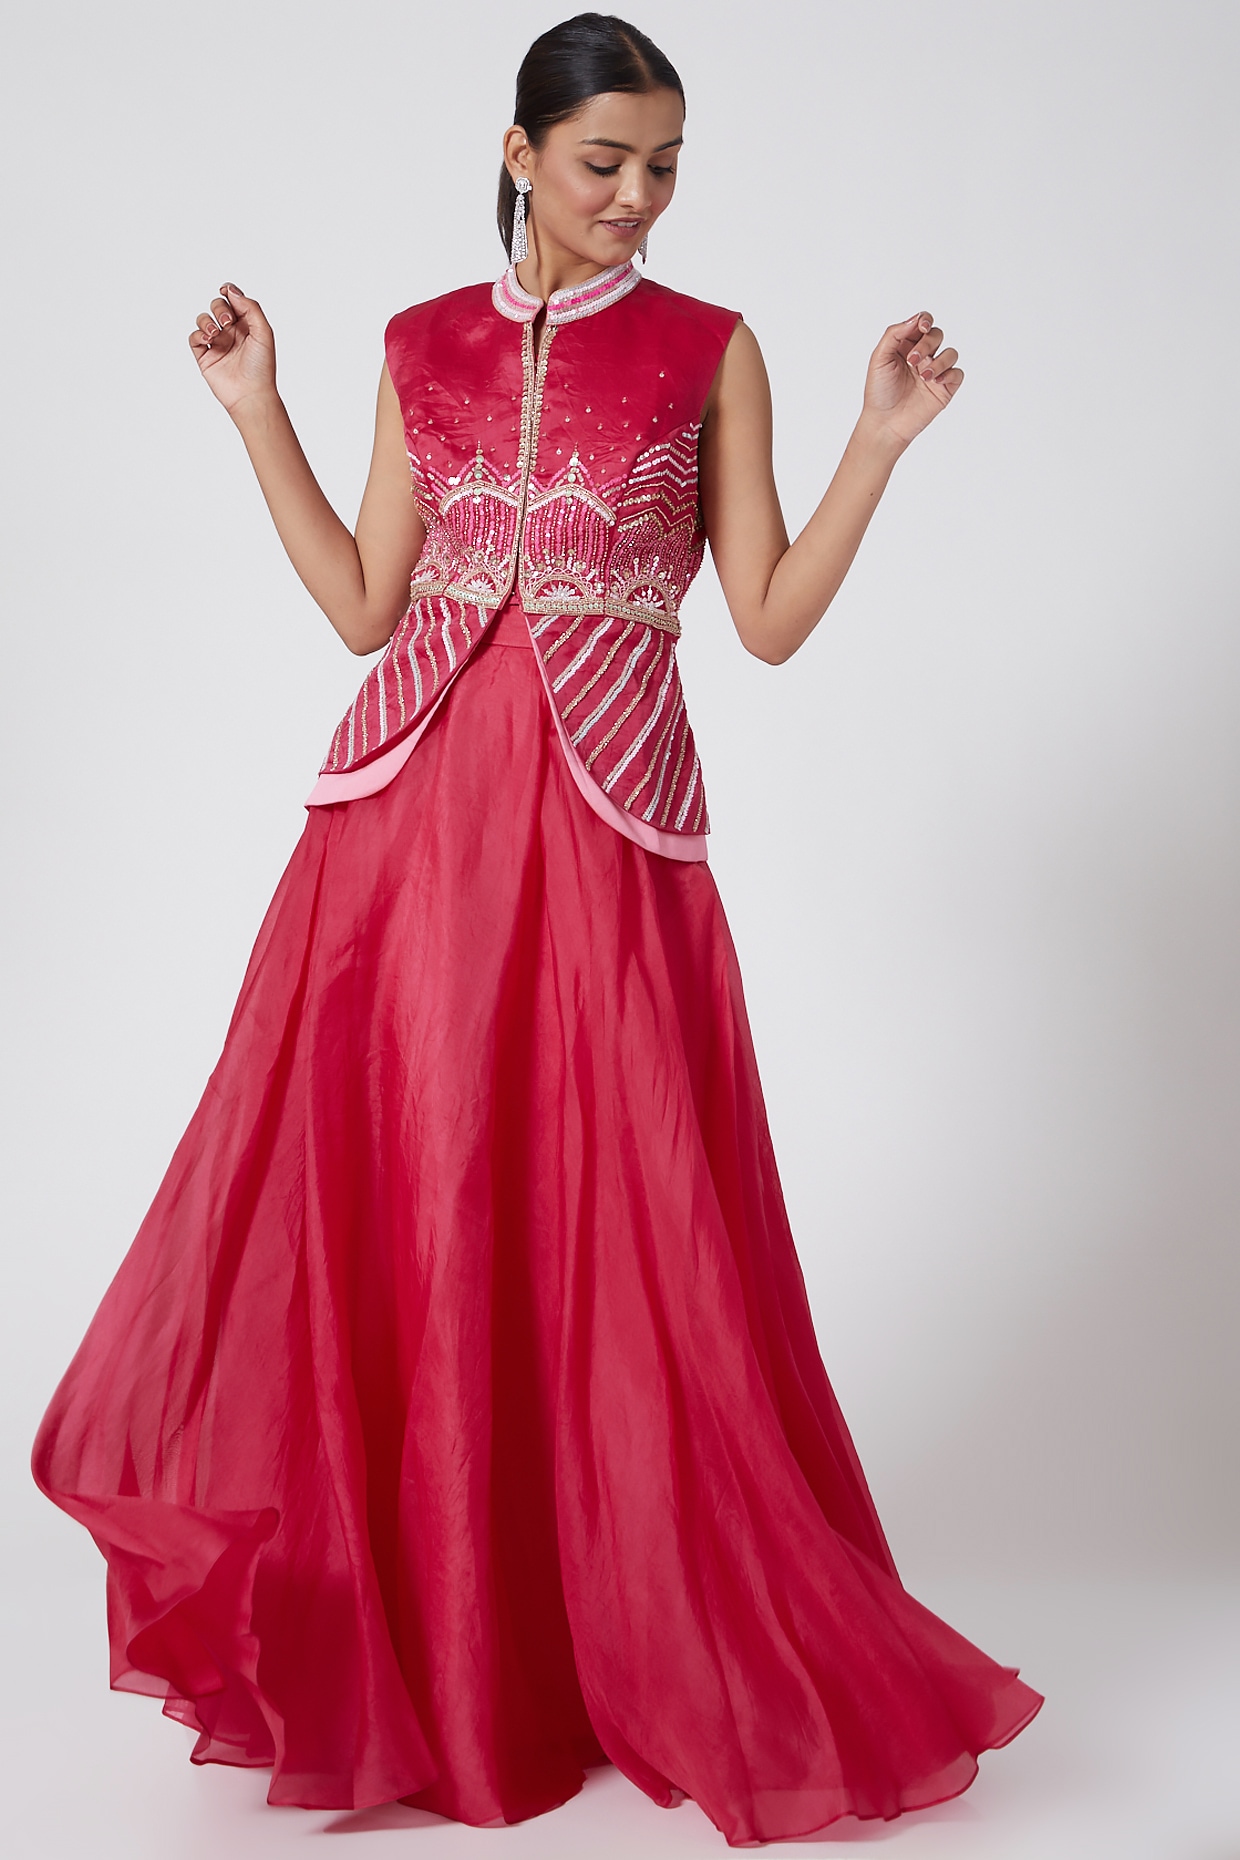 Buy Indo Western Dresses Online at Poshak  Latest Designer outfits  POSHAK